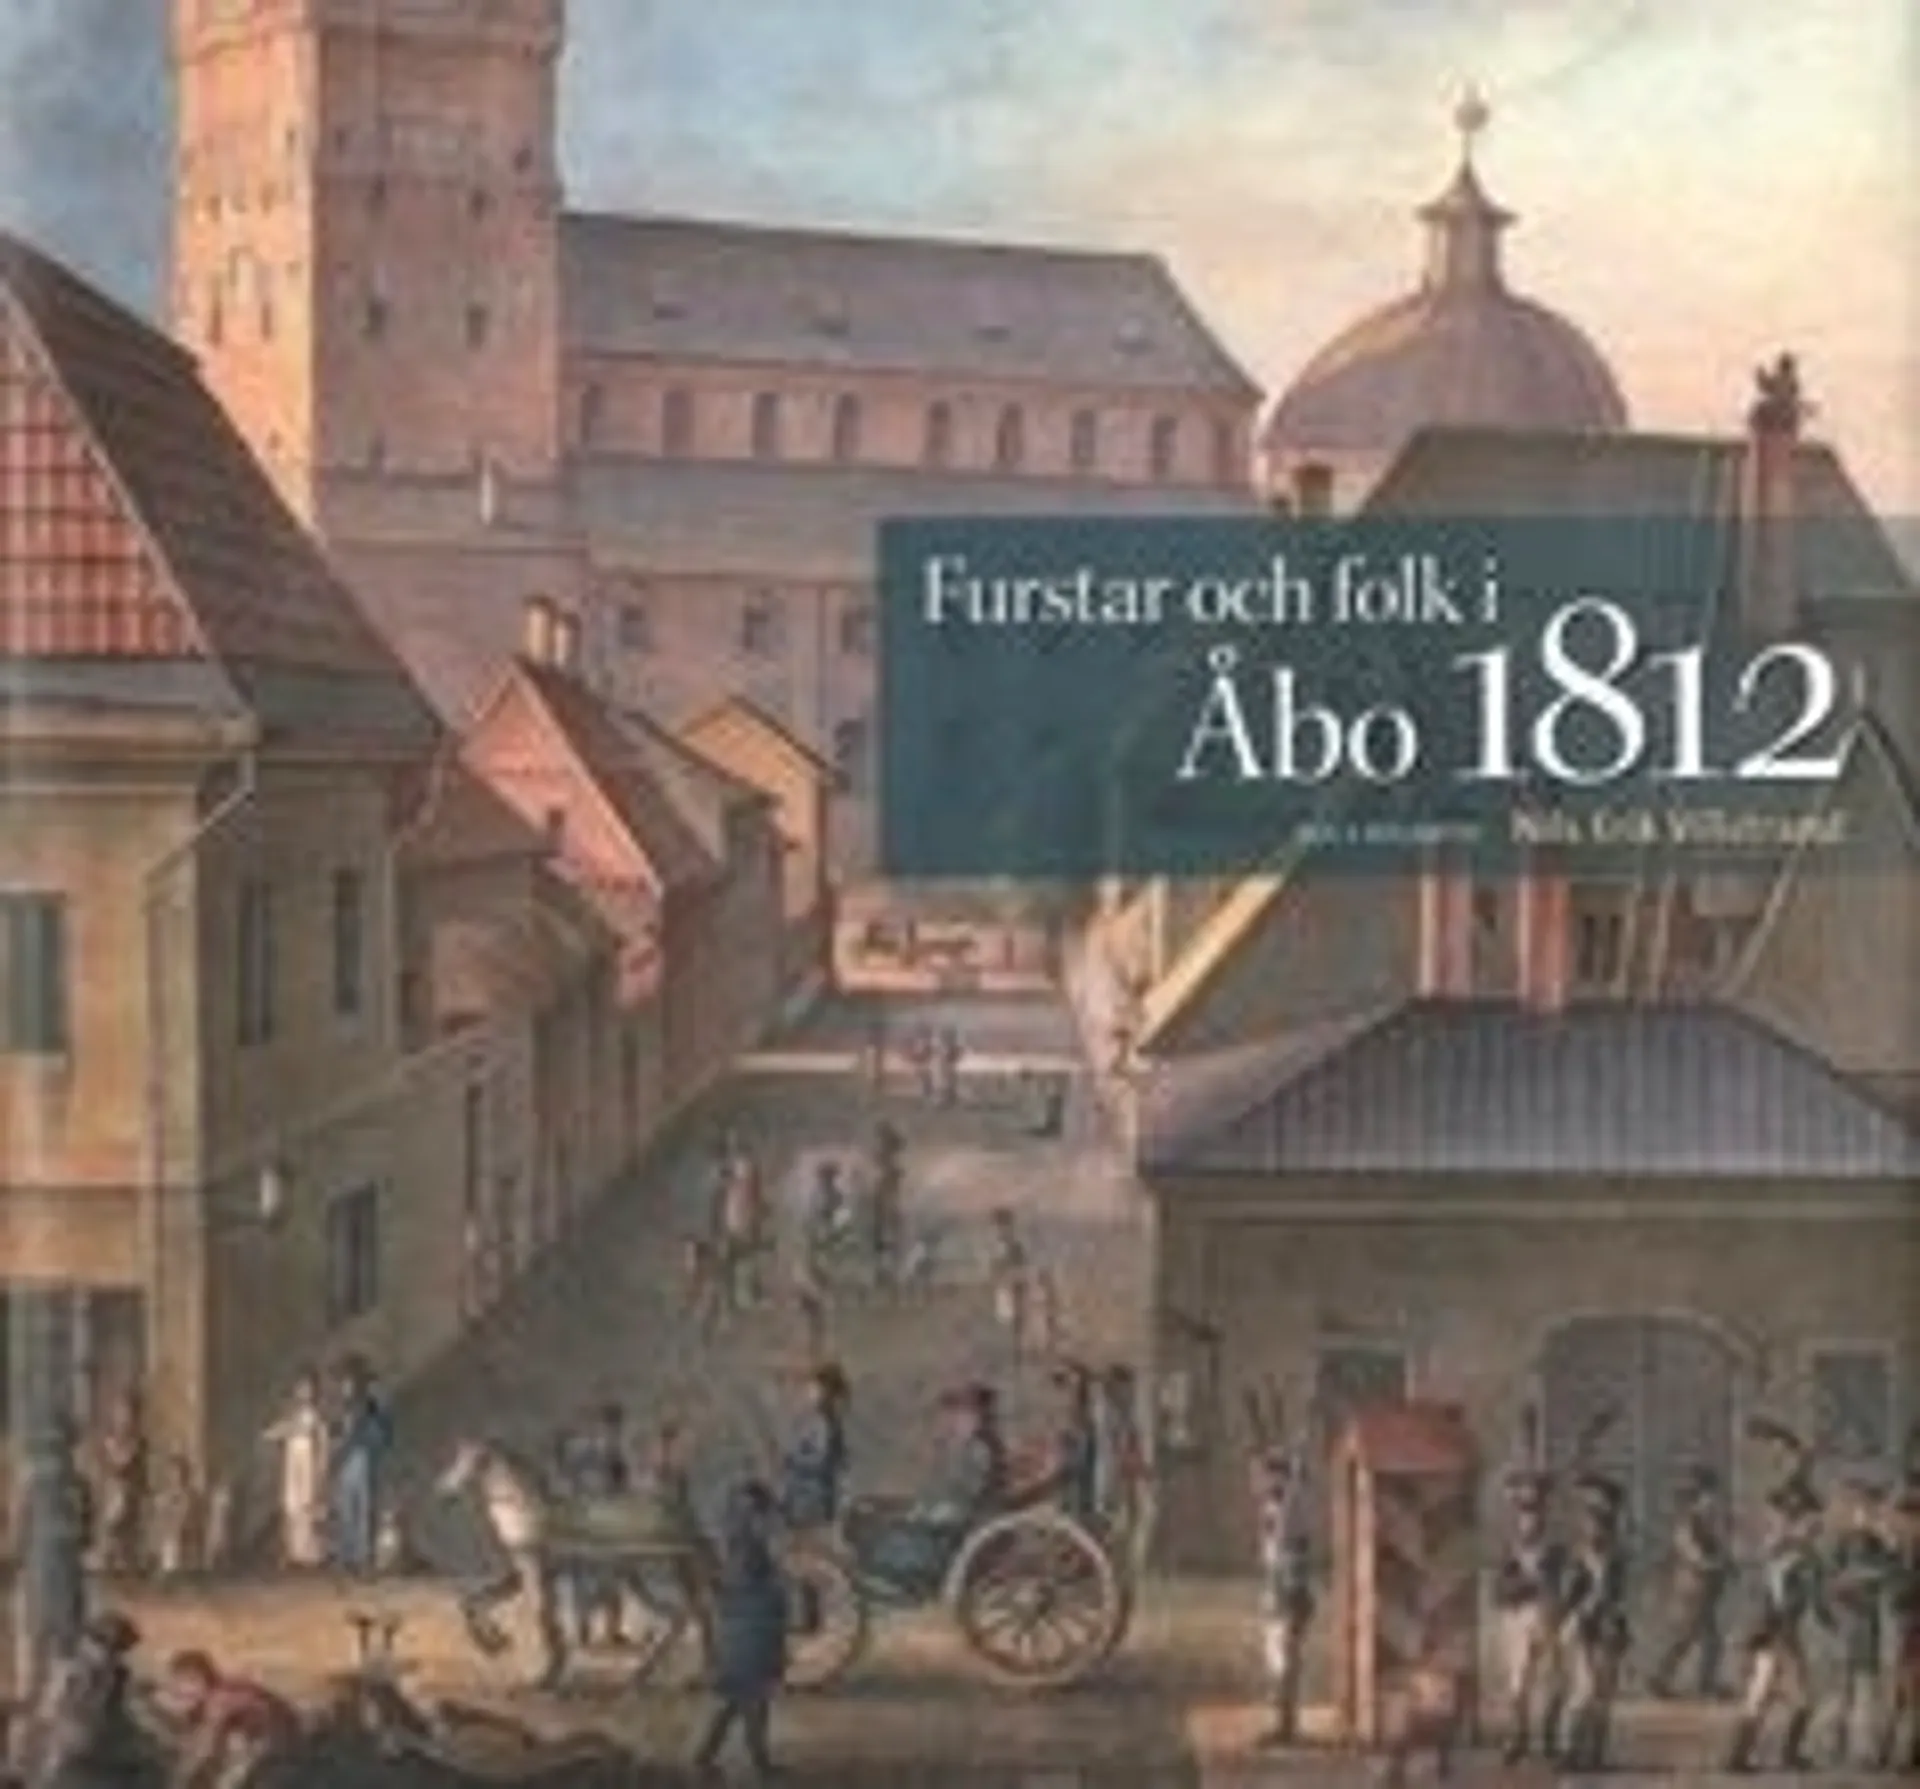 Villstrand, Furstar och folk i Åbo 1812